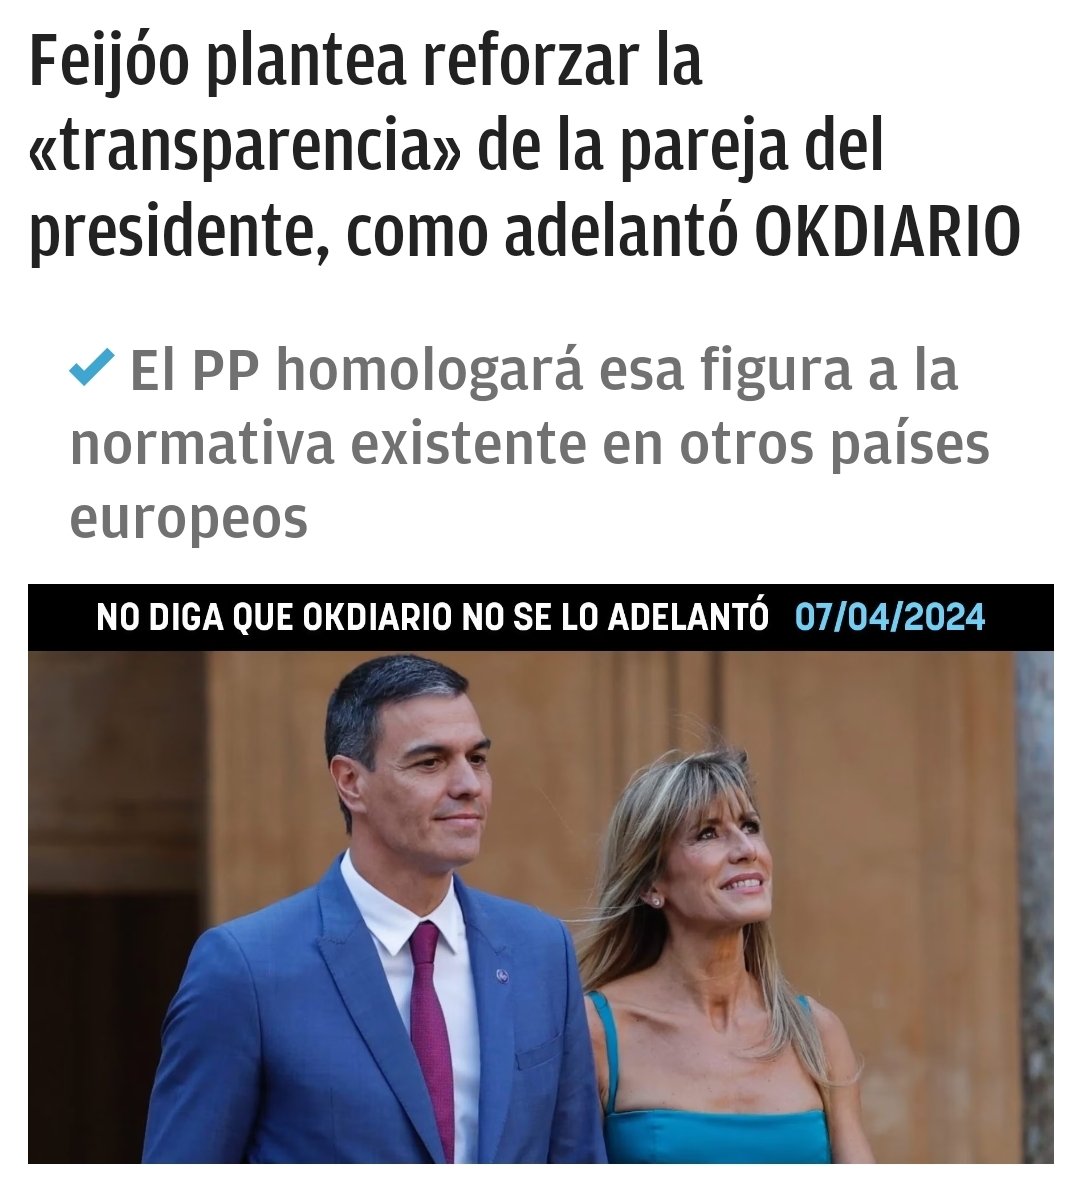 Otra estupidez de las muchas del PP. En España ya existe la figura de la Primera Dama que es la Reina. La mujer del Presidente del Gobierno no es nada. Solo se ha de esperar q no sea una delincuente, y si lo es q sea procesada, punto. Nadie la ha votado. #ConVoxOConNadie #TeamVox